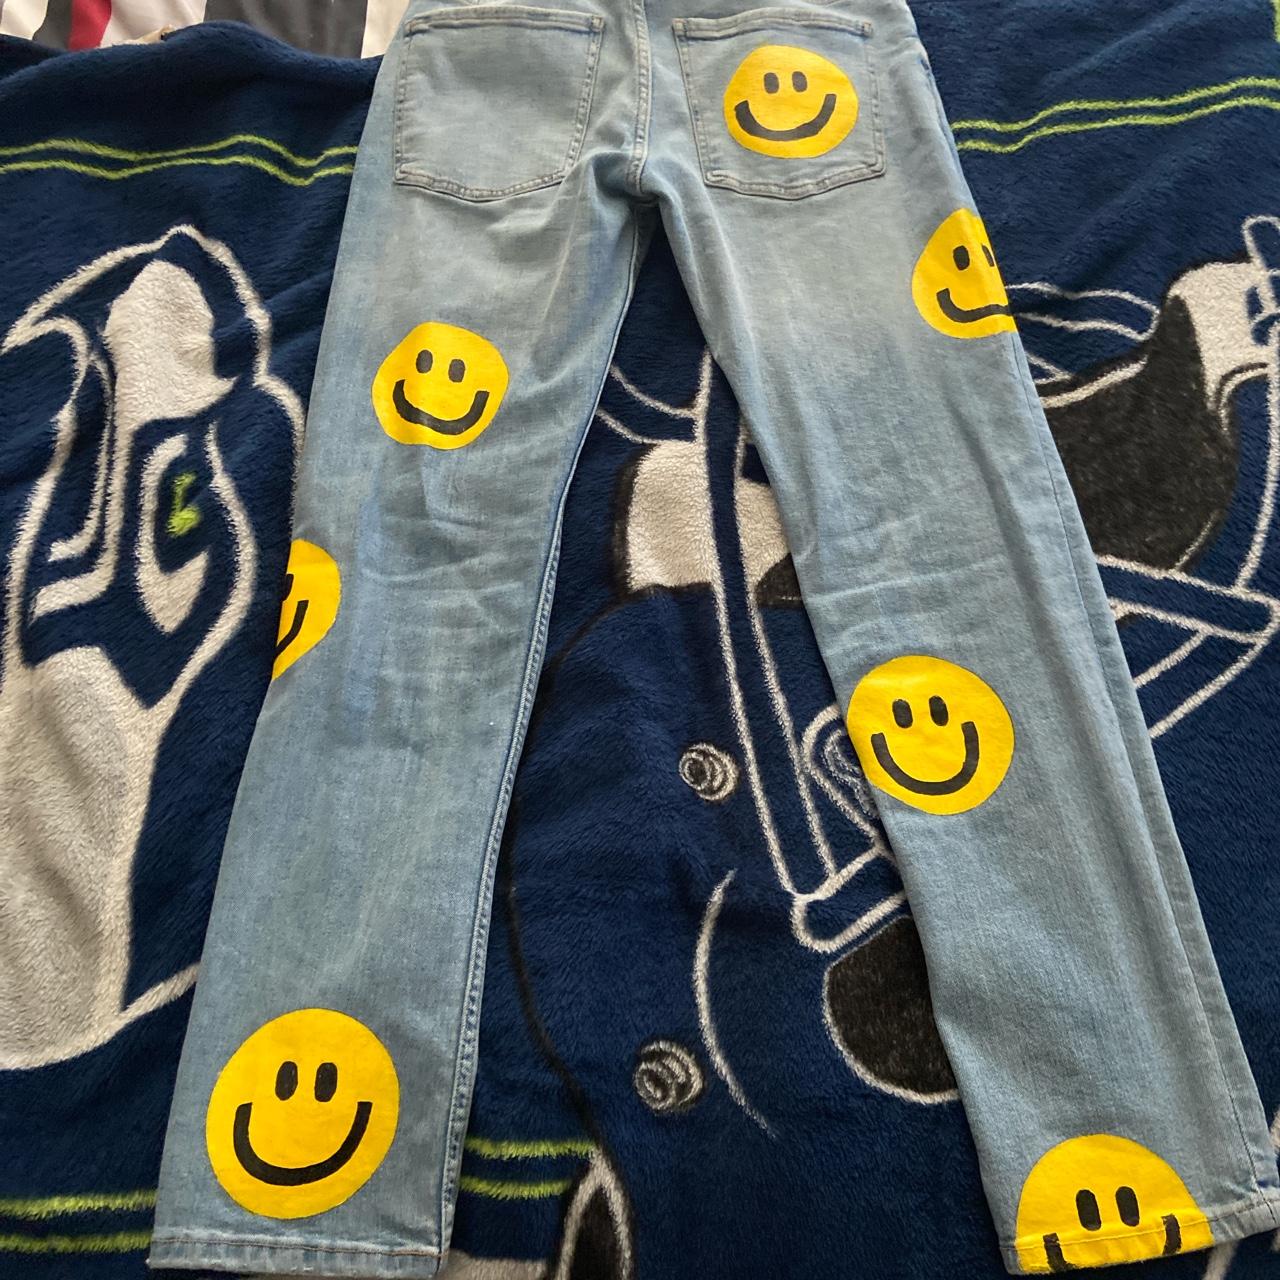 1 of 1 Smiley Jeans #Drip #Handmade #Custom #1of1 - Depop